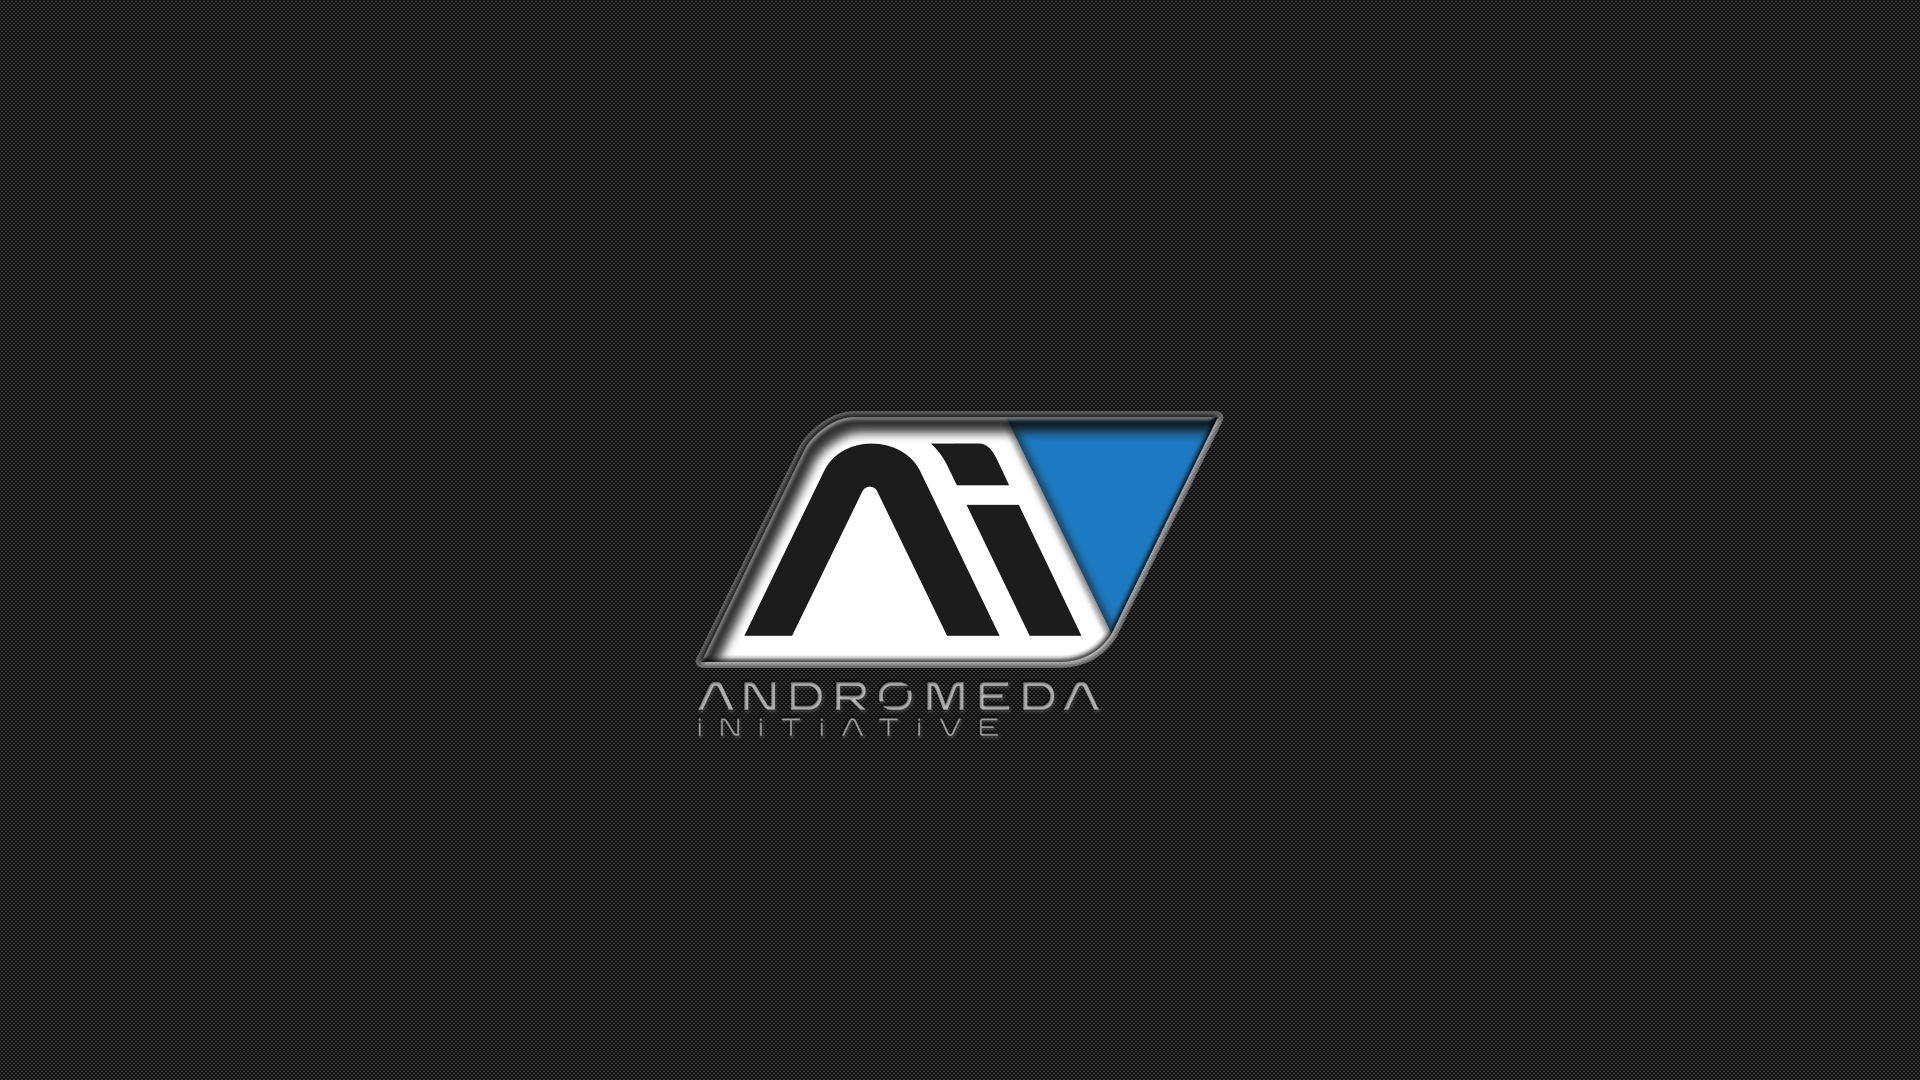 Téléchargez gratuitement l'image Mass Effect, Jeux Vidéo, Mass Effect: Andromeda sur le bureau de votre PC